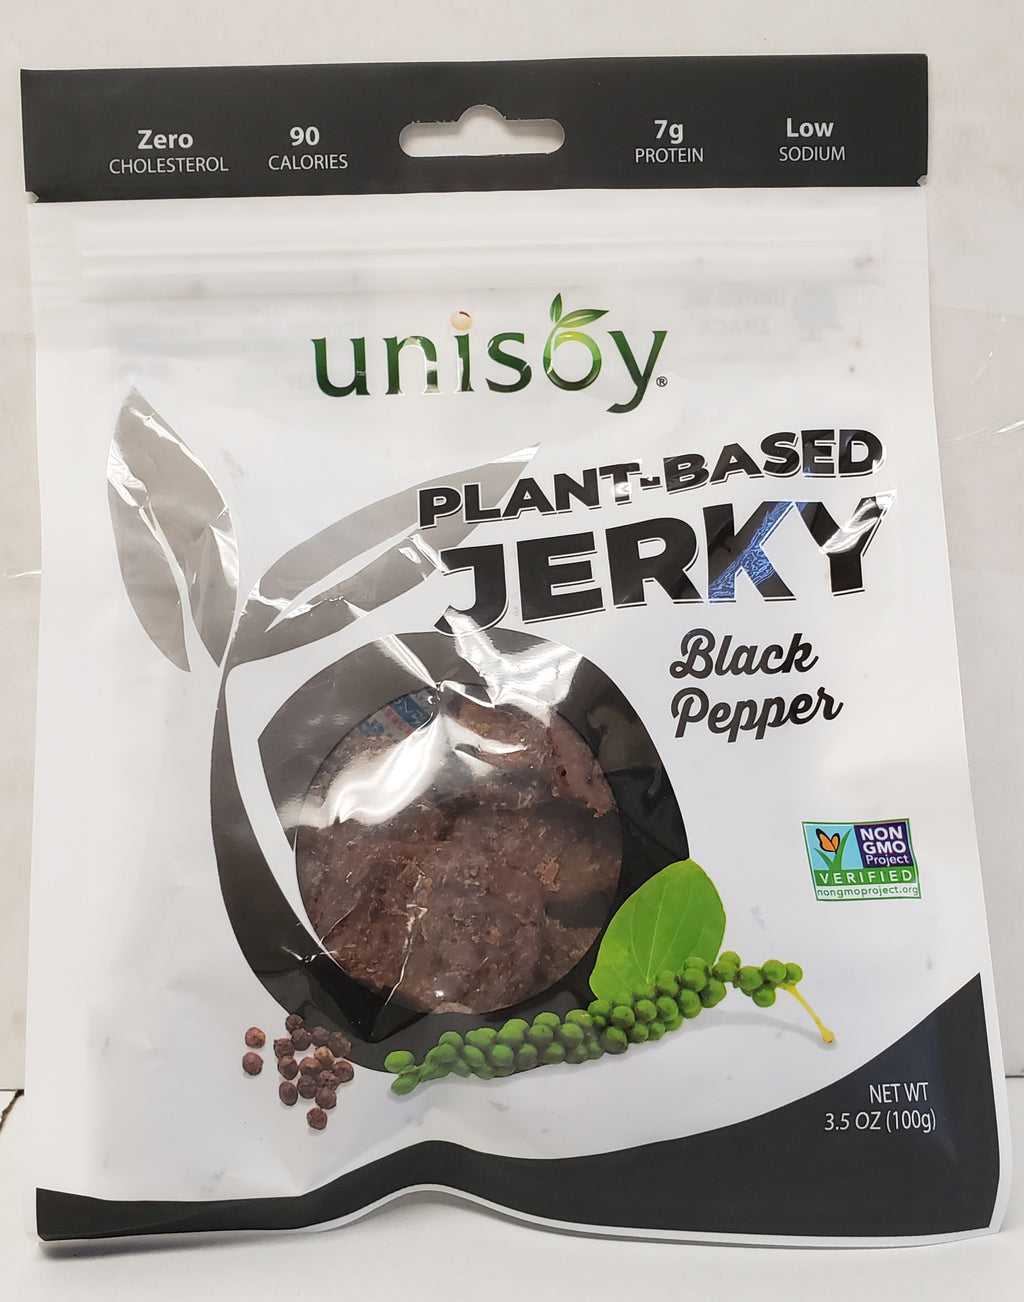 Unisoy Vegan Jerky - Black Pepper (2-pack special) - The Jerky Hut online